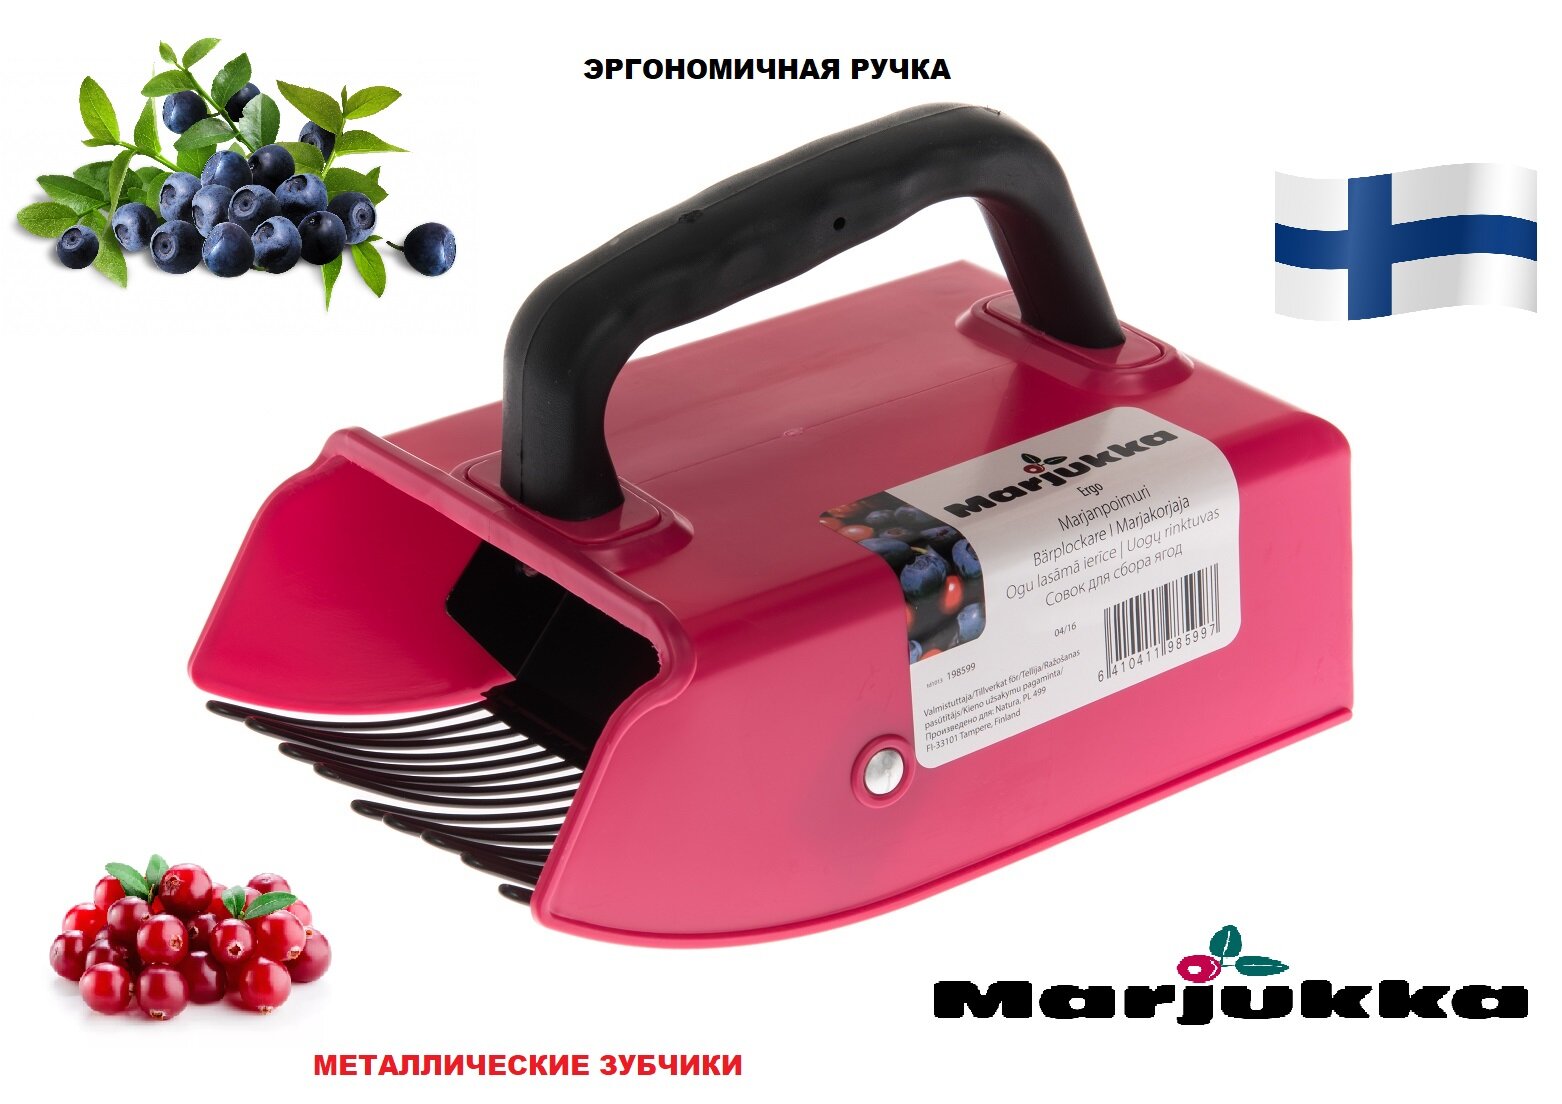 Плодосборник -комбайн для сбора ягод с металлическими зубчиками и эргономичной прорезиненной ручкой MARJUKKA